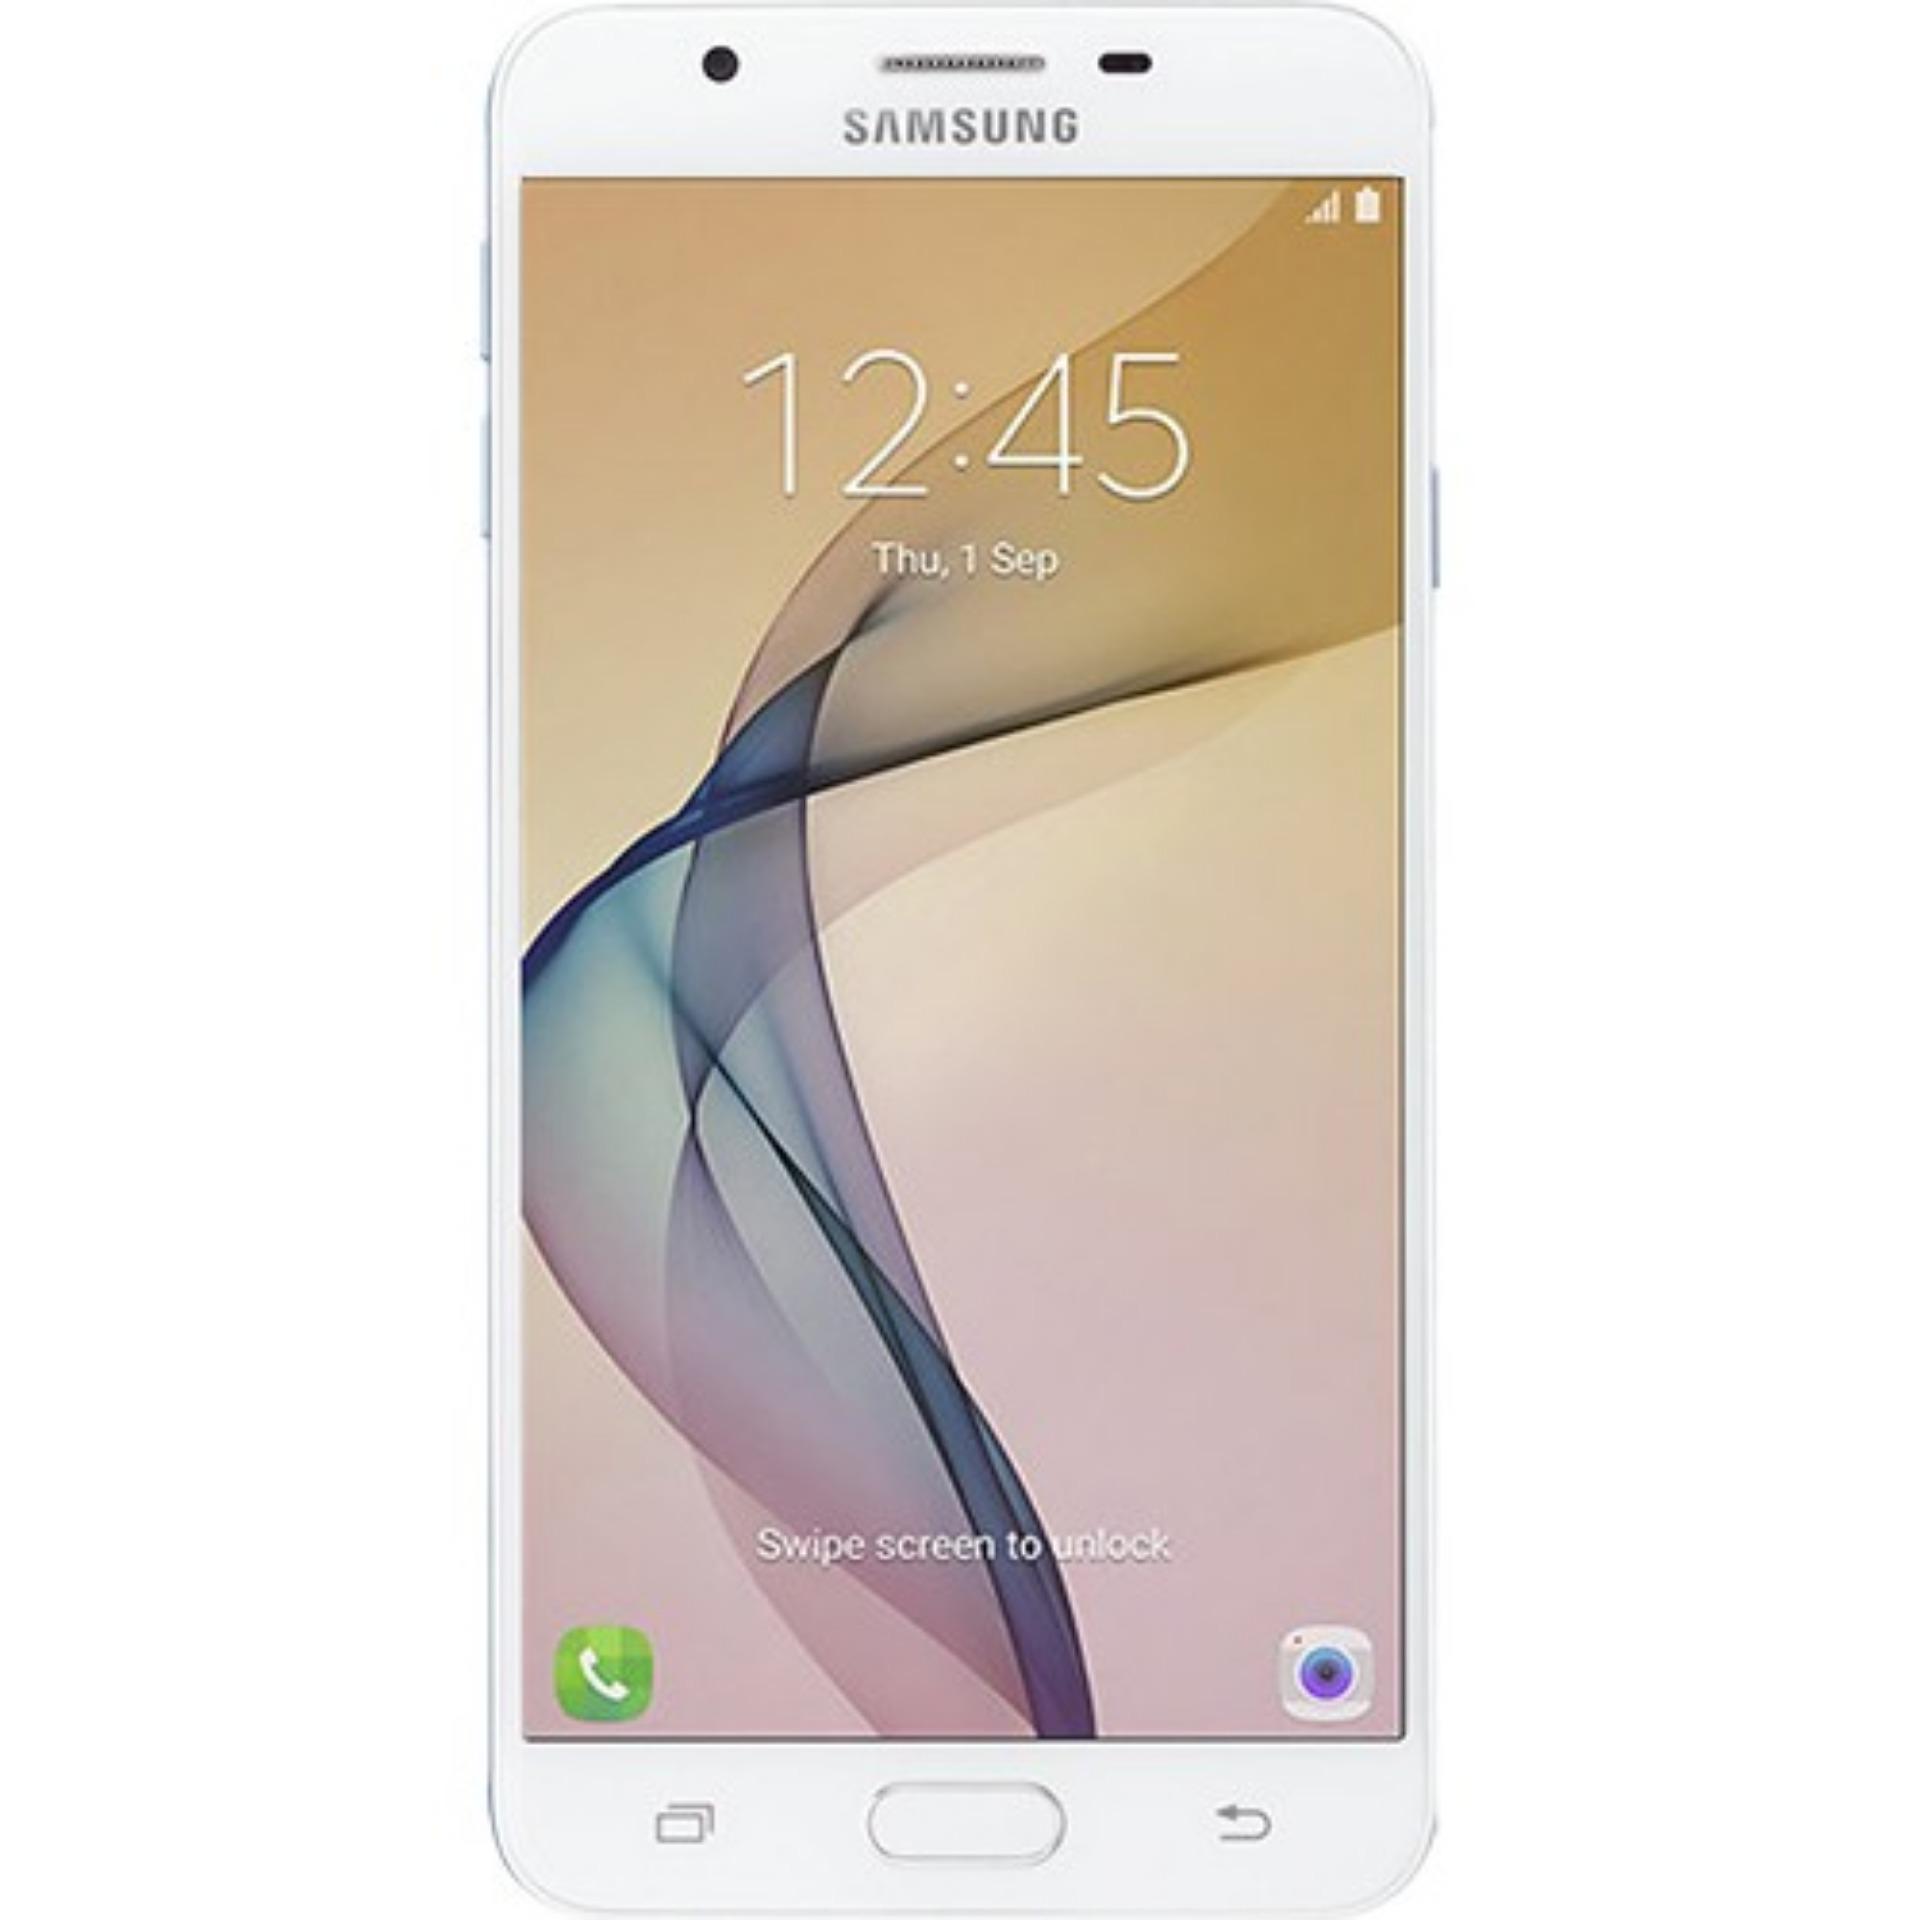 Samsung Galaxy J7 Prime 32GB 2016 2 Sim (Xanh) - Hãng phân phối chính thức